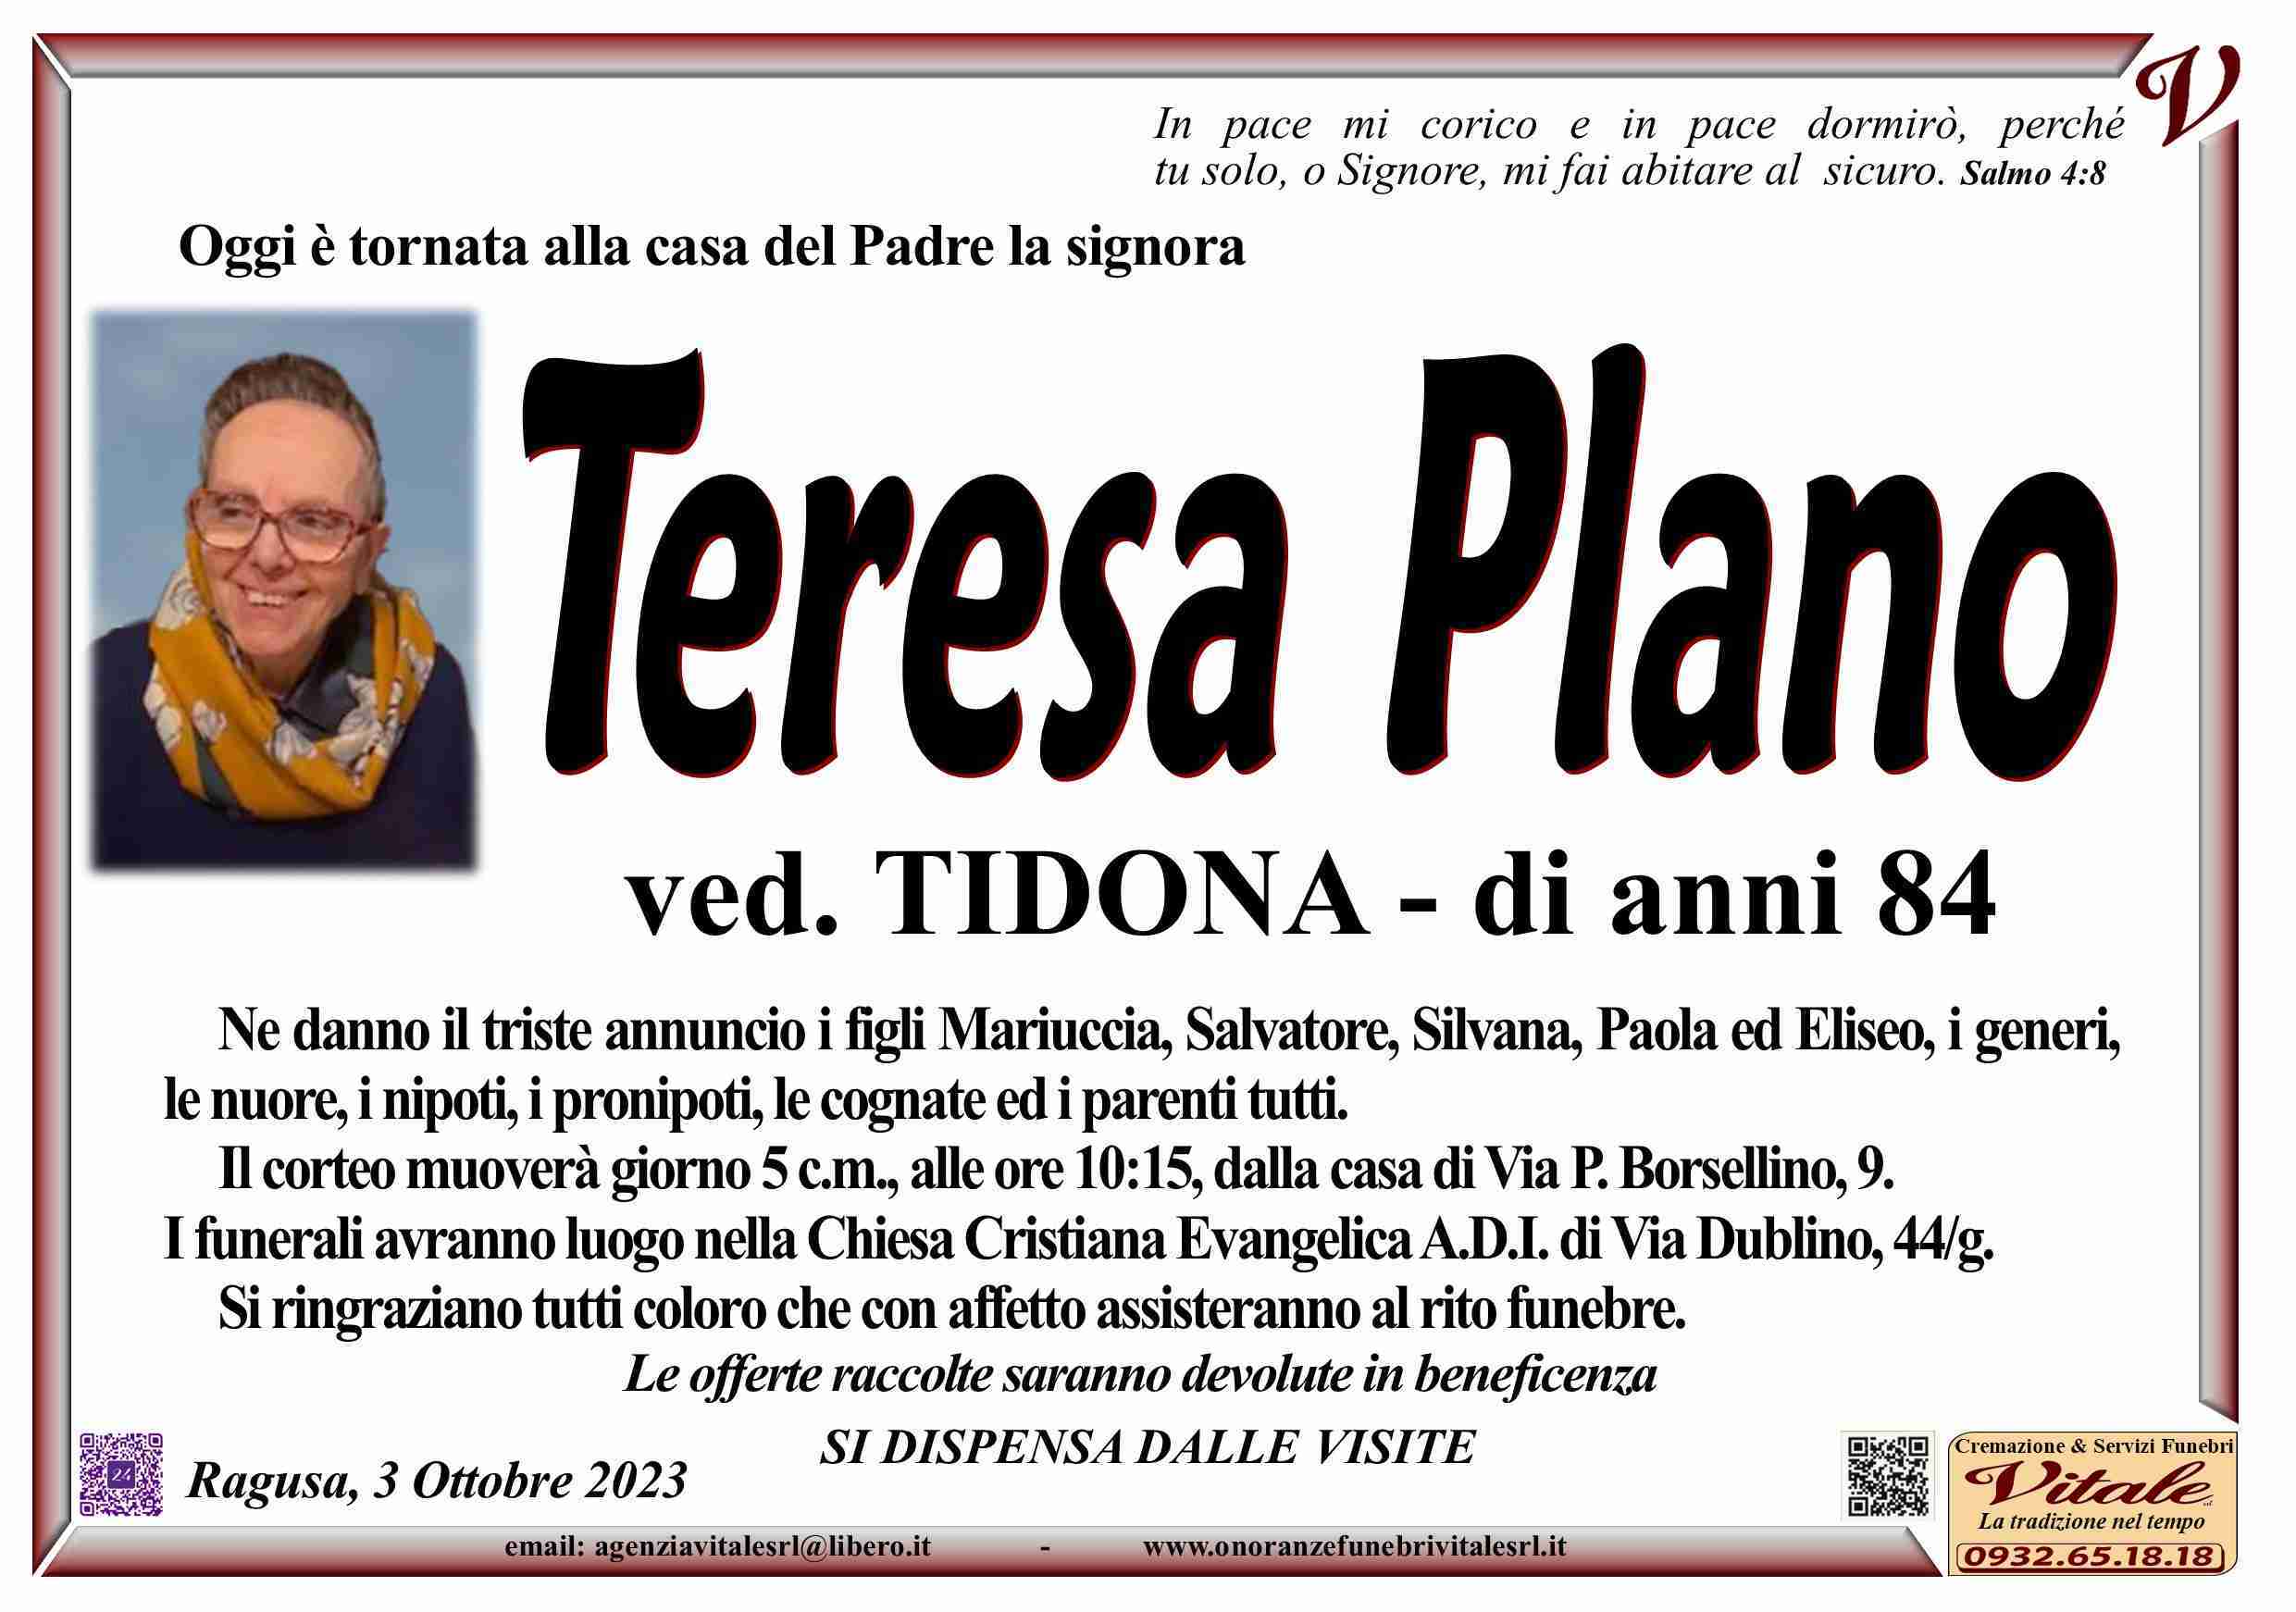 Teresa Plano